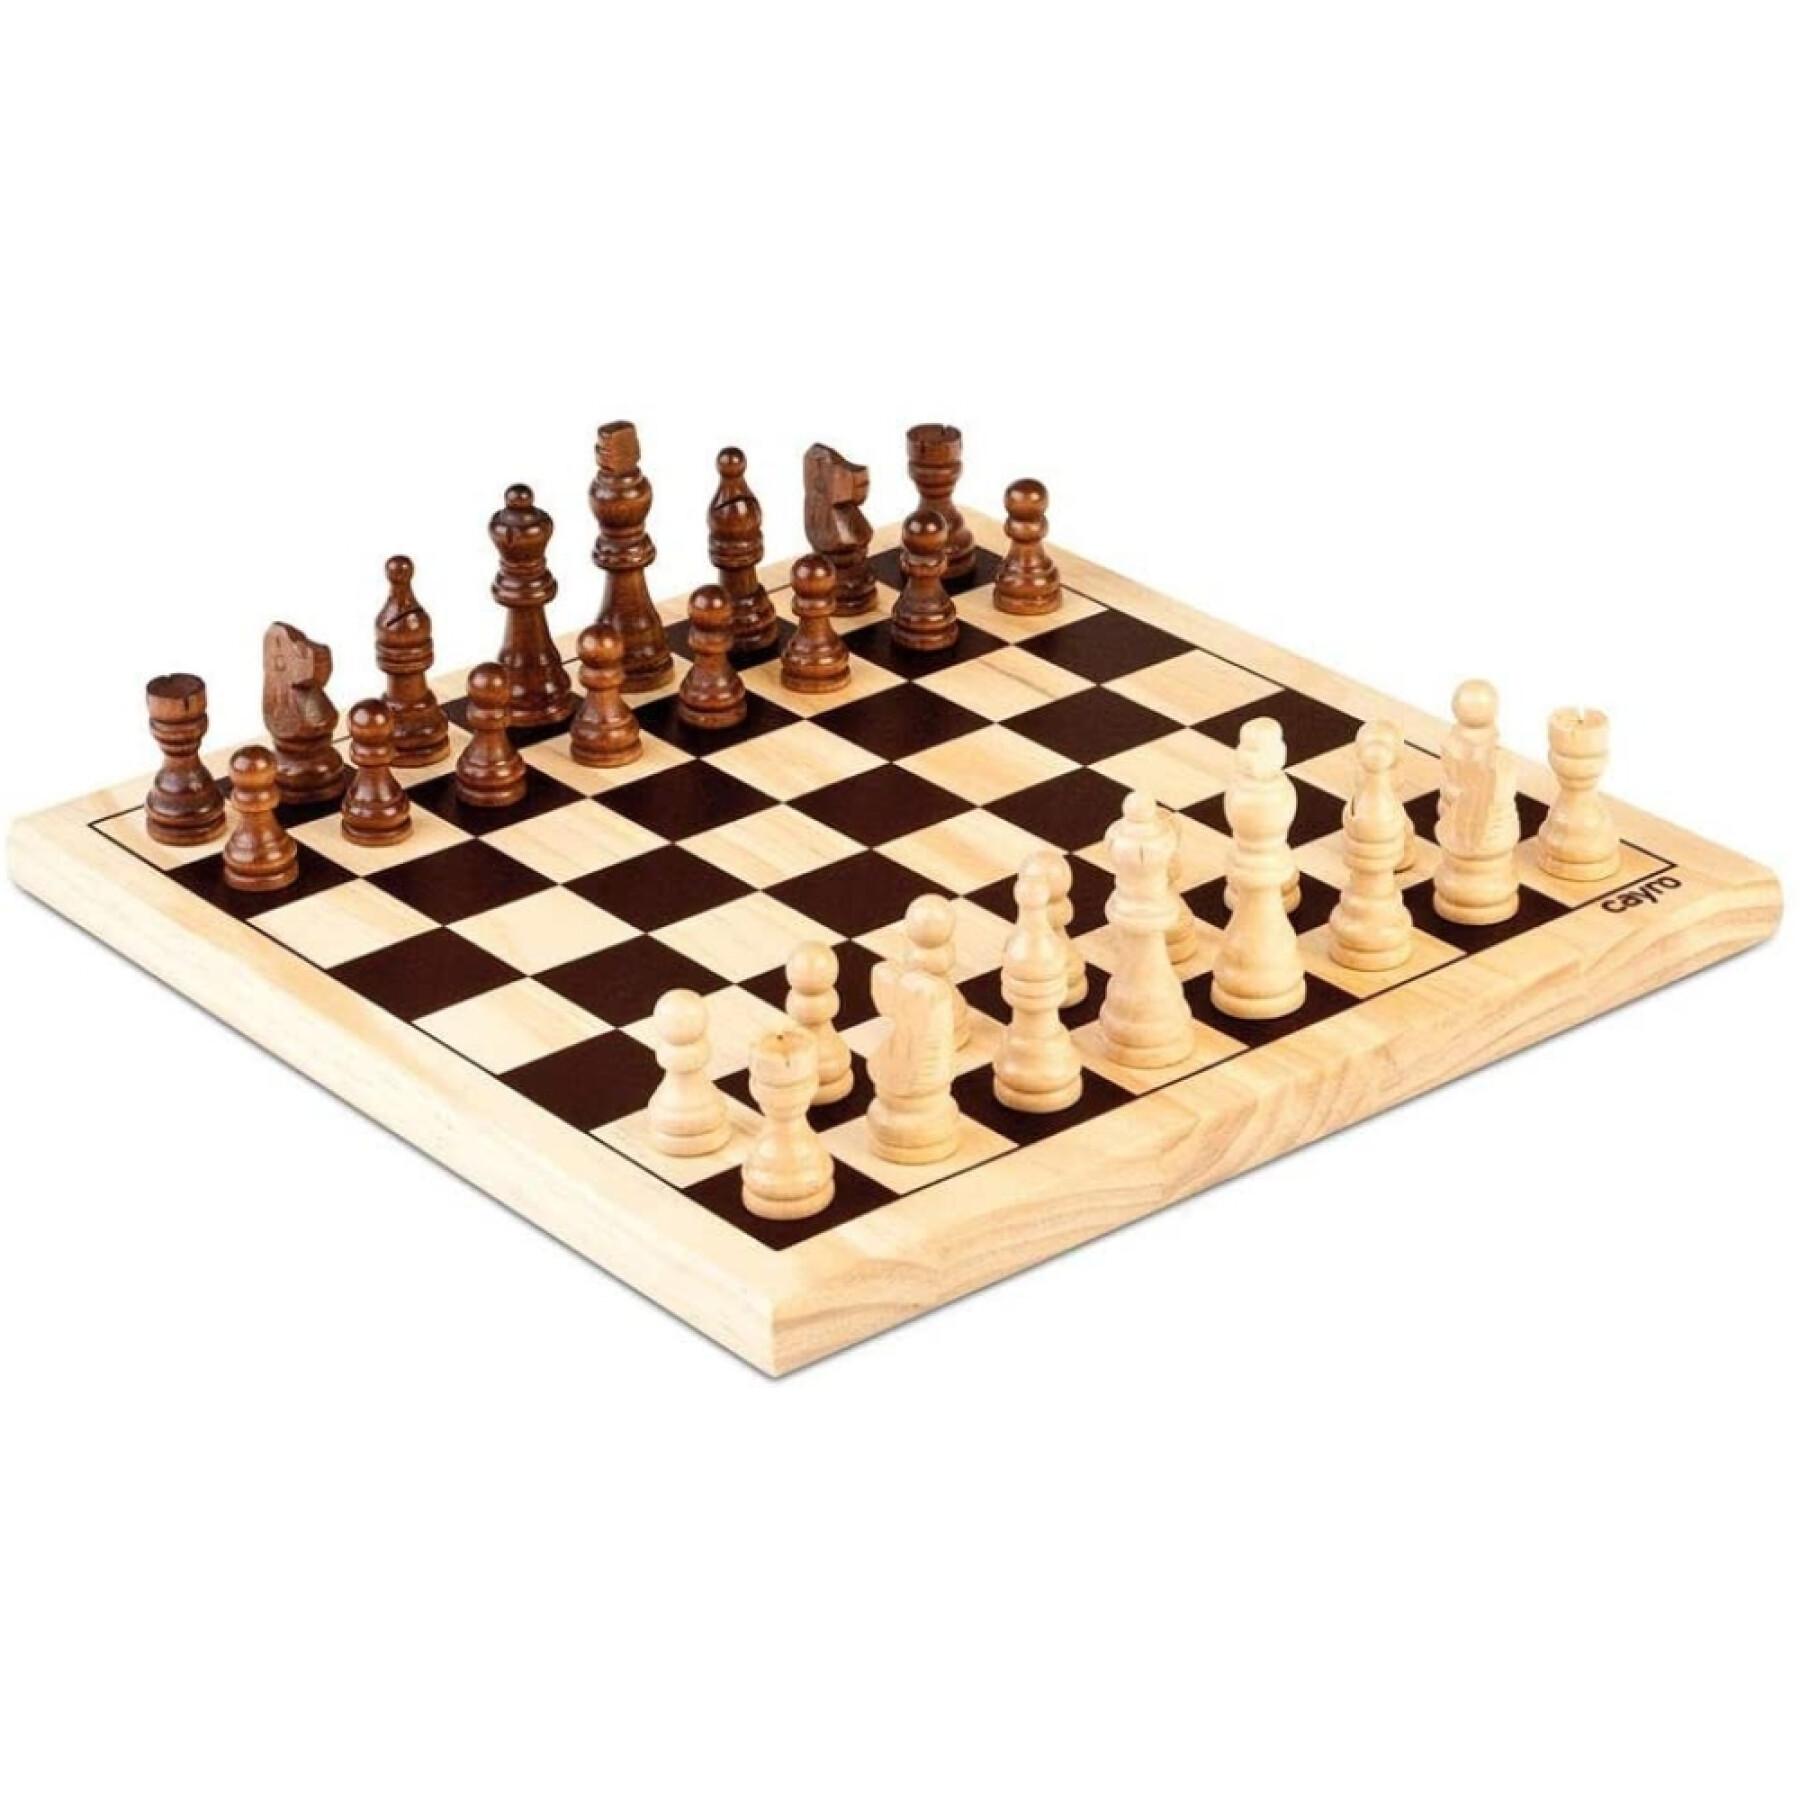 Drewniane zestawy do gry w szachy Cayro